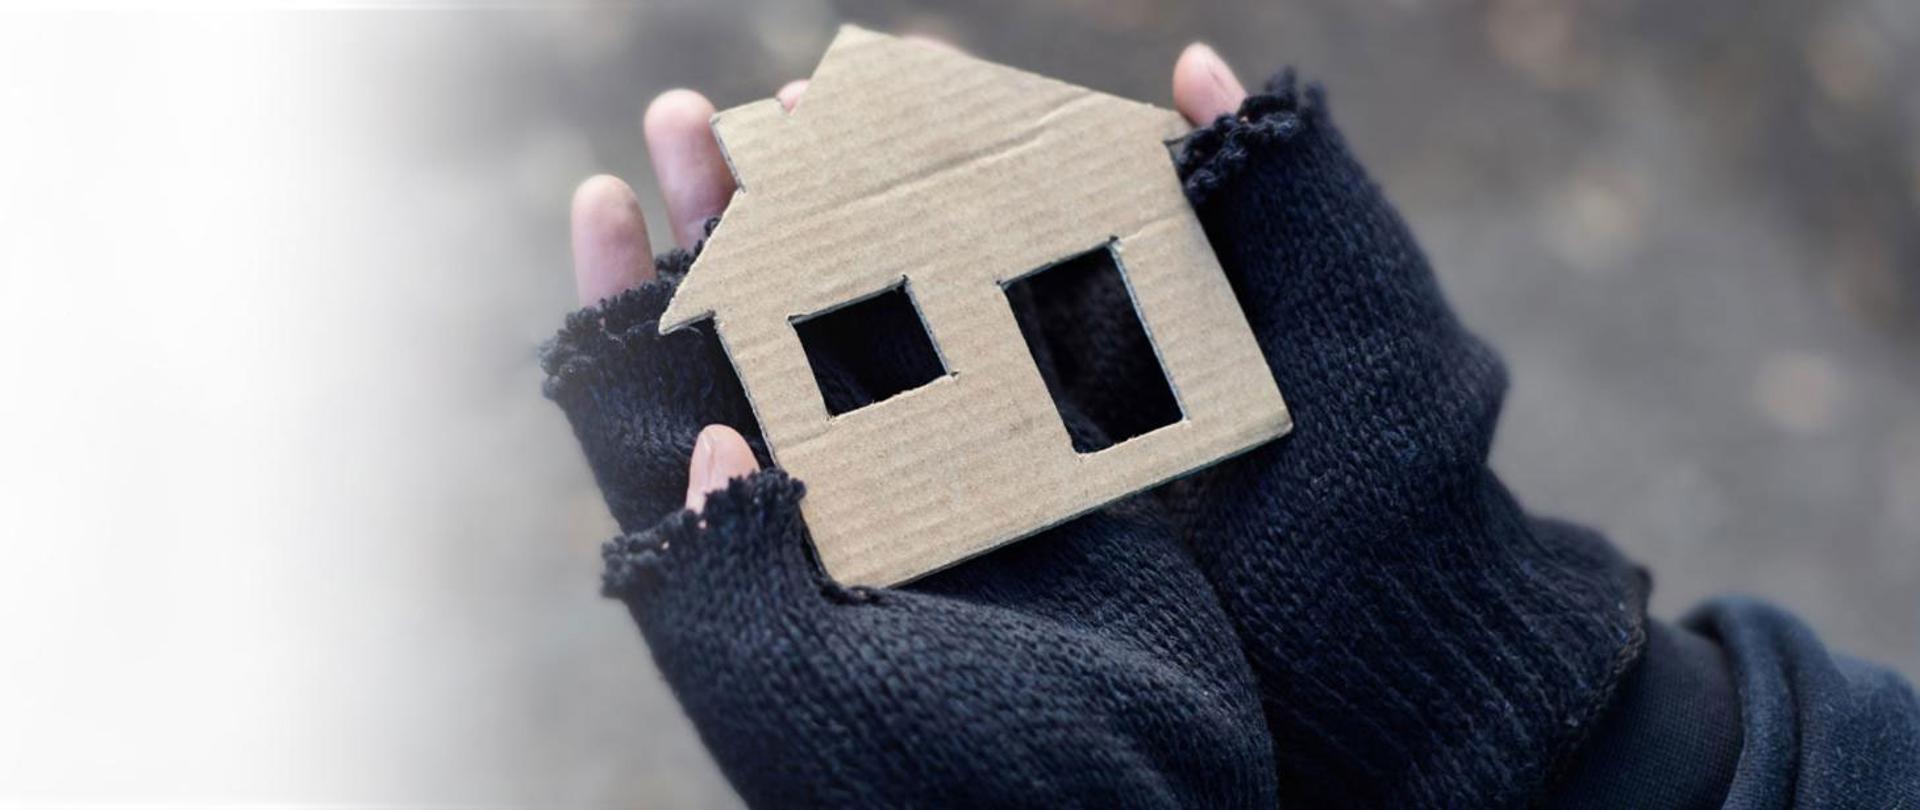 Na zdjęciu dłonie w wełnianych rękawiczkach, trzymające wycięty z kartonu kształt domu.